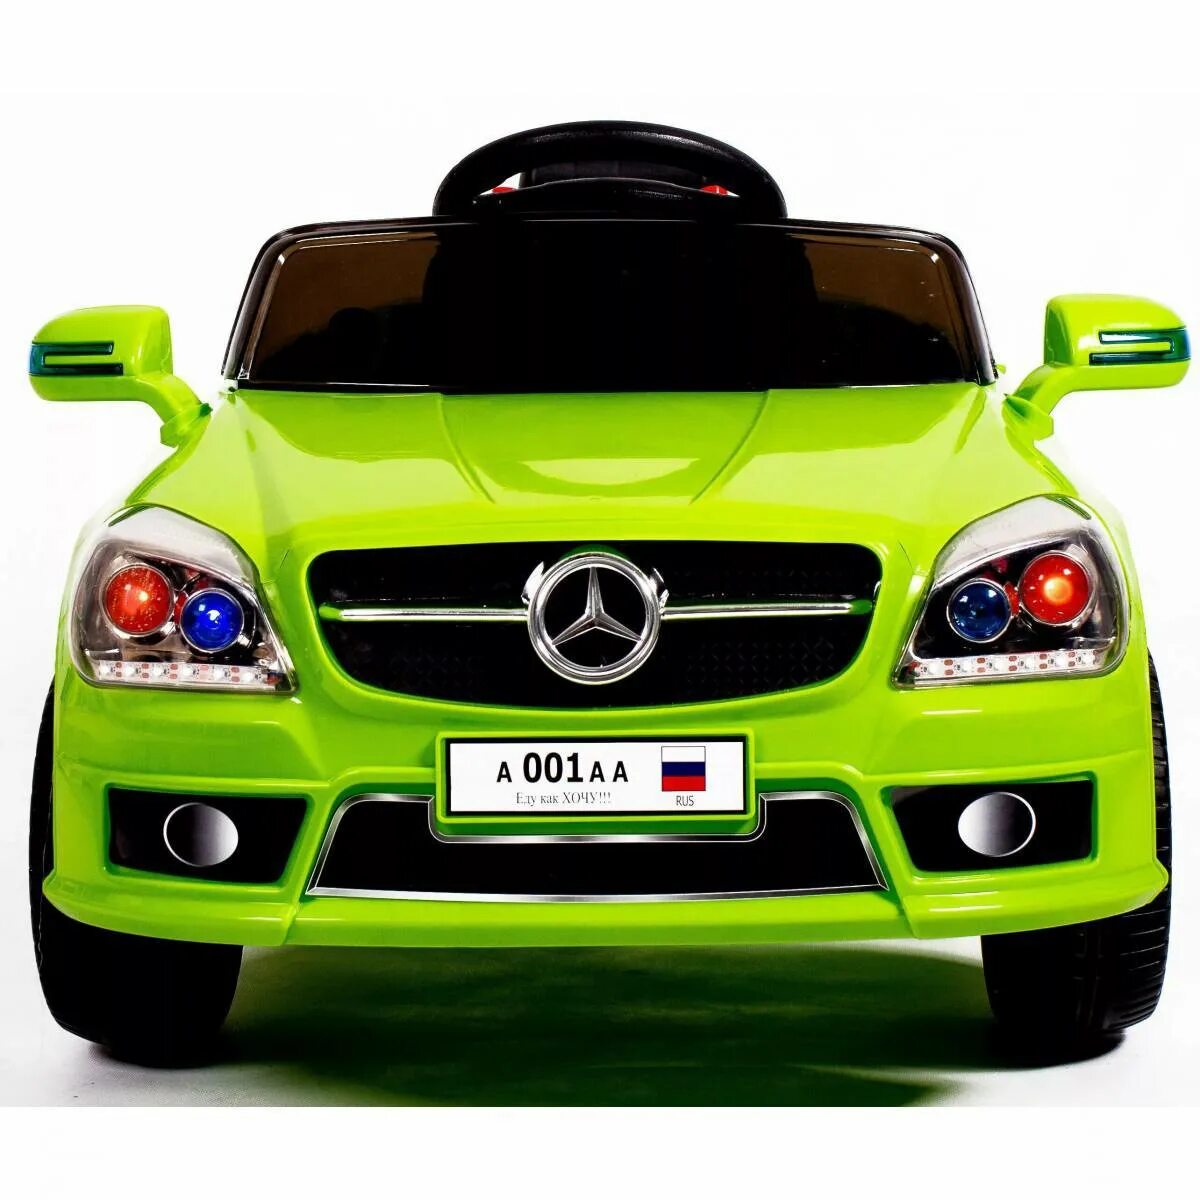 Покажи машину авто. Автомобиль для детей. Детская машина. Зеленая машина для детей. Машины картинки для детей цветные.